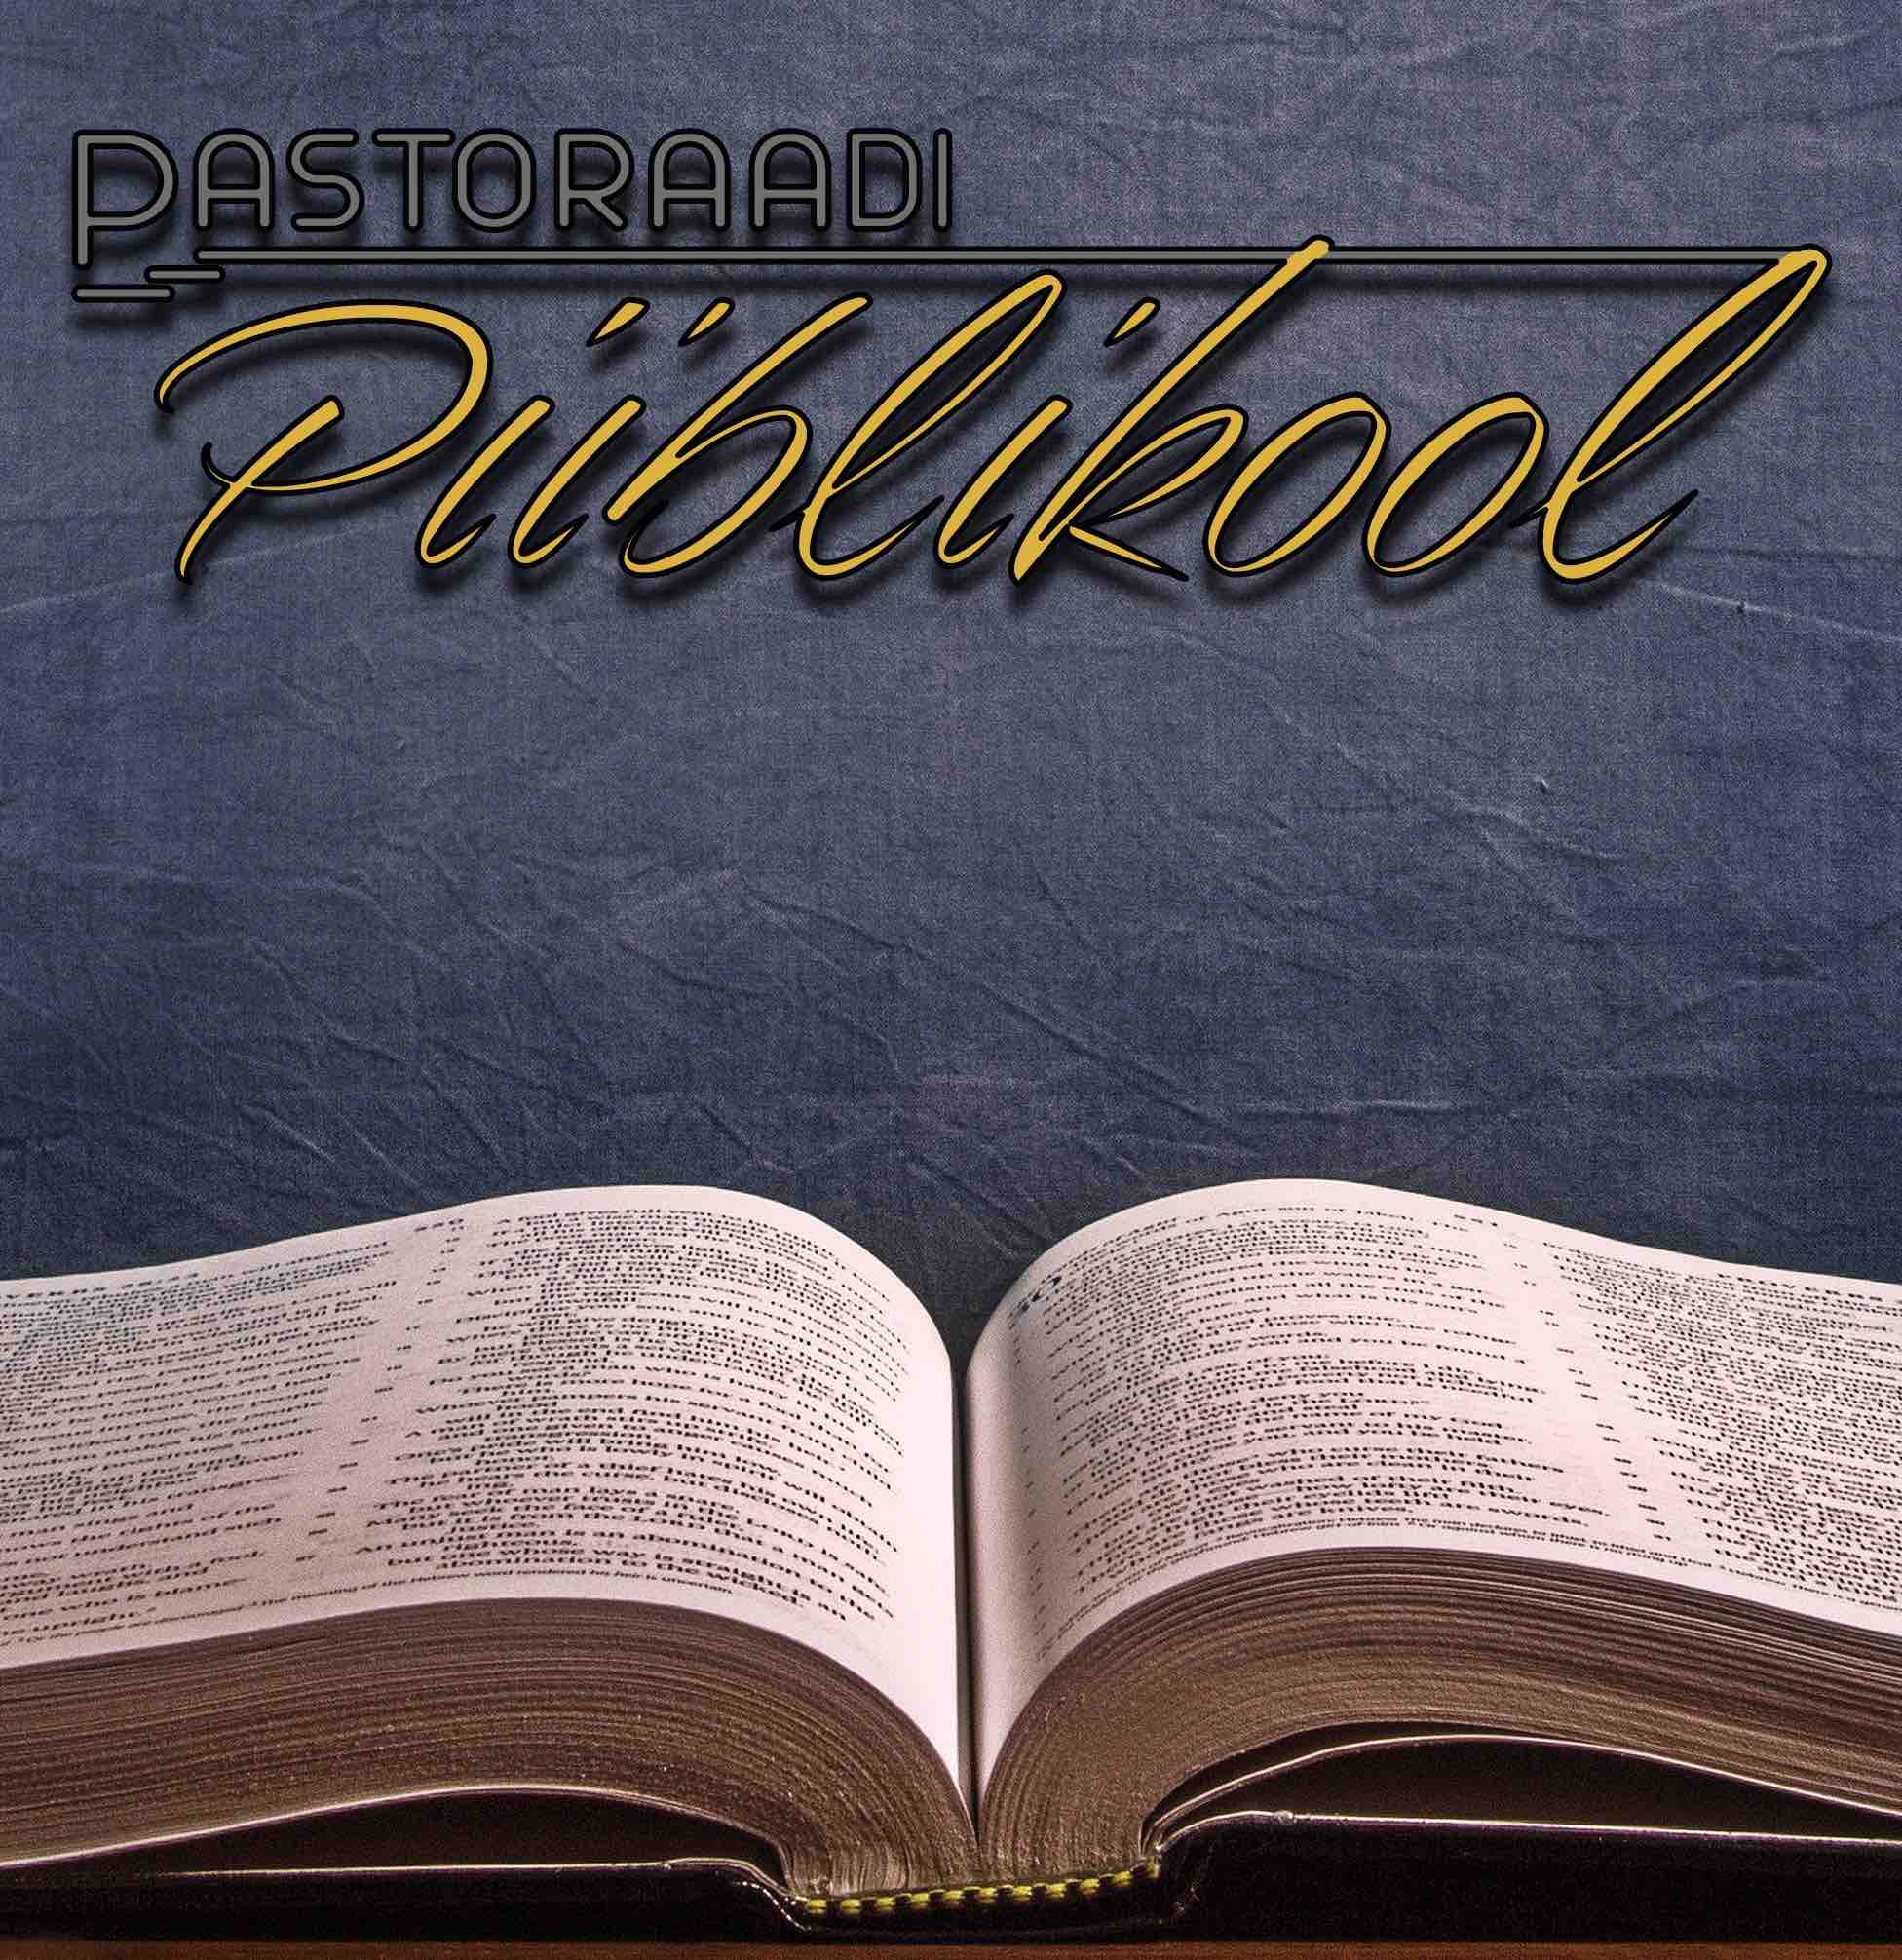 19. septembril 2022 alustab Pastoraadi piiblikool uue kursusega. Pastoraadi piiblikoolis anname 35 esmaspäeva õhtul ülevaate Piibli põhisisust, kesksetest sündm